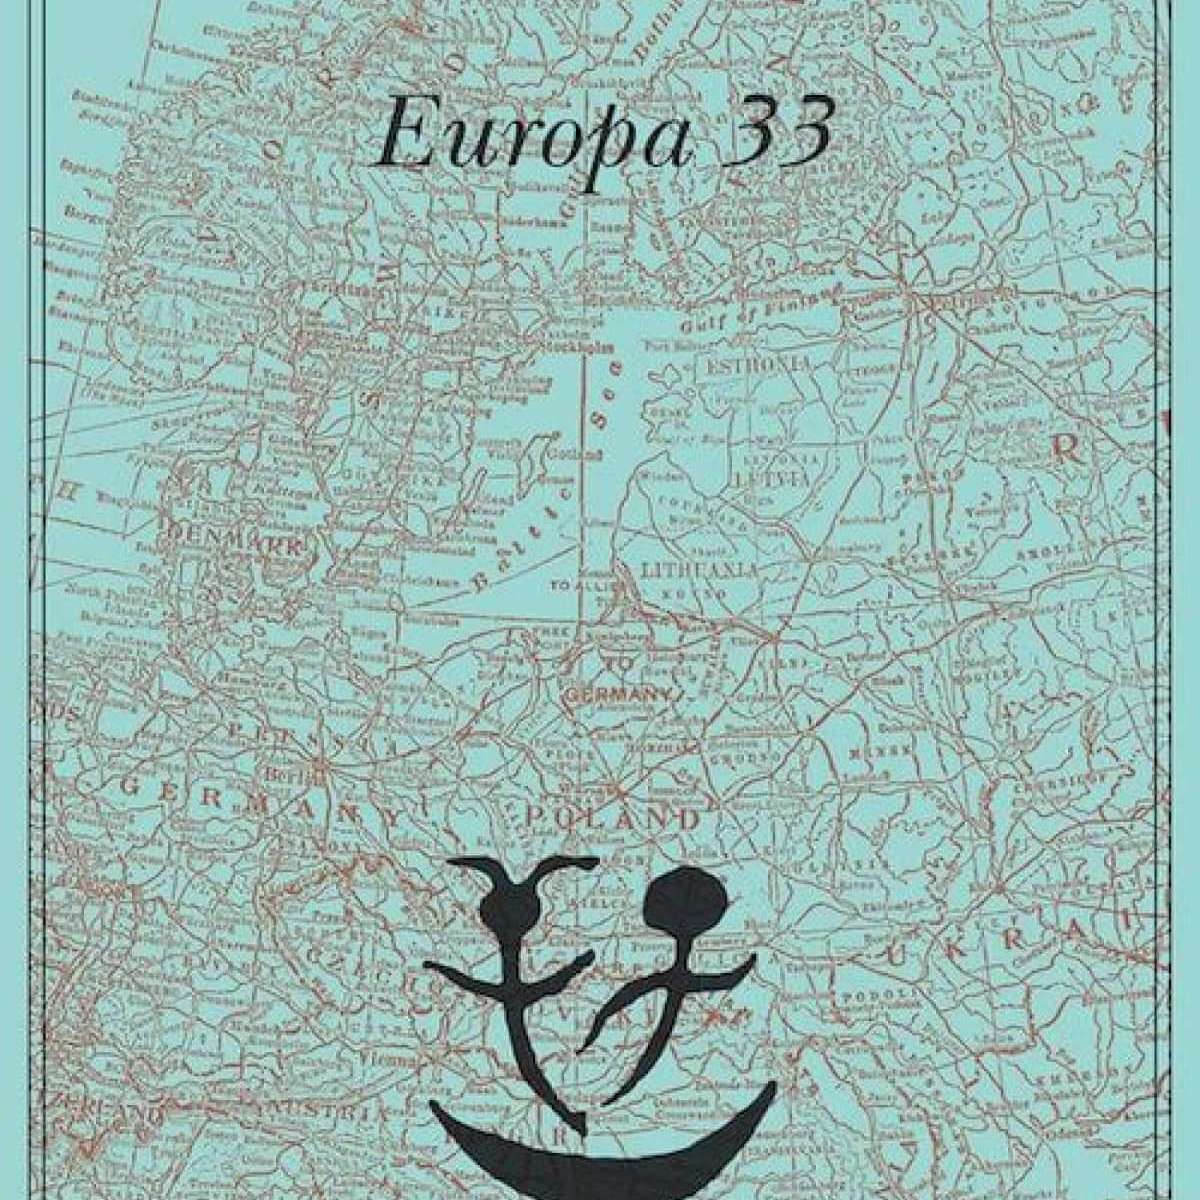 Europa 33 – Georges Simenon